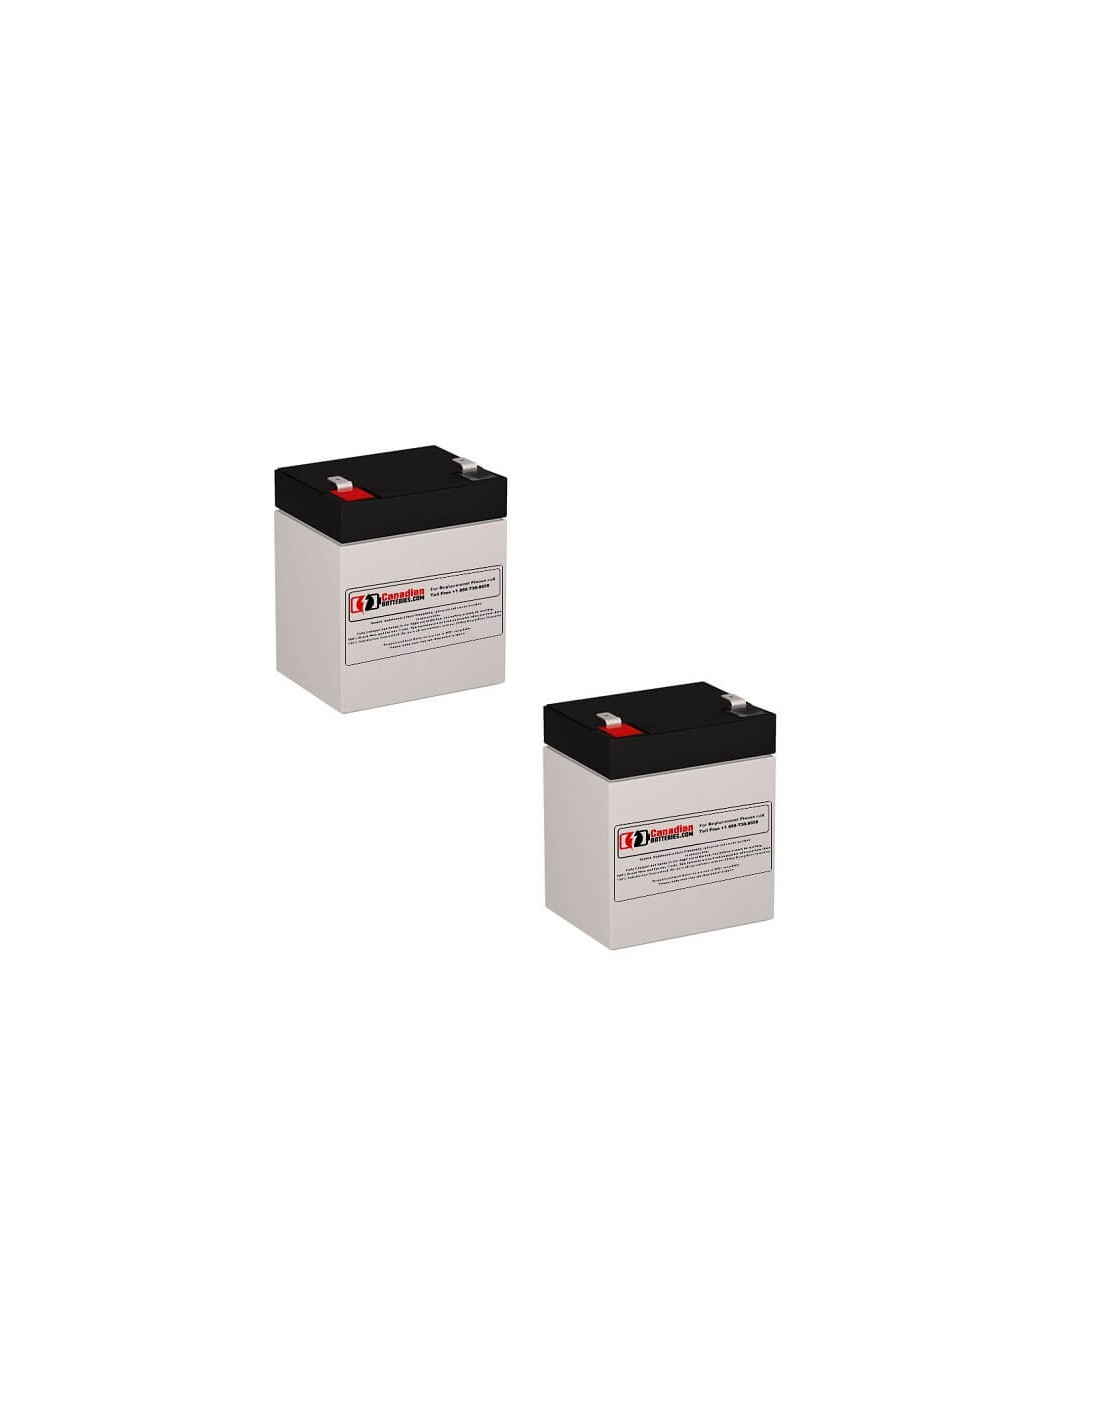 Batteries for Belkin F6c1000ie-tw-rk UPS, 2 x 12V, 5Ah - 60Wh